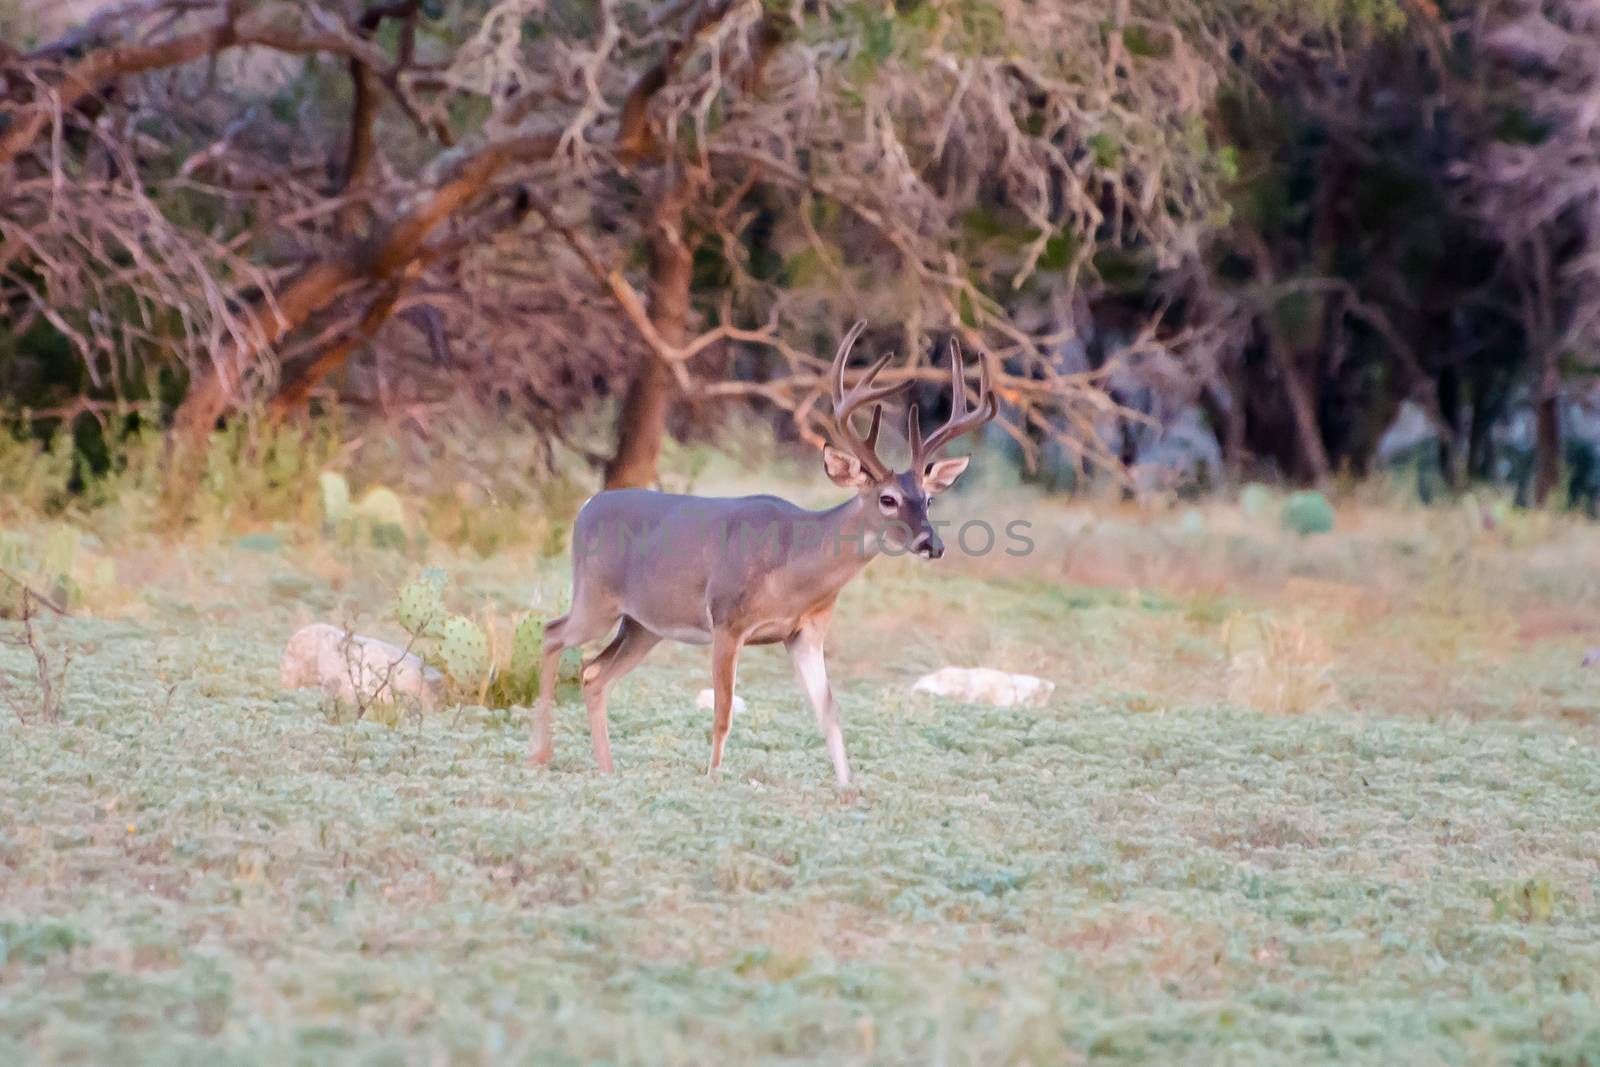 South Texas Whitetail buck in velvet before hunting season